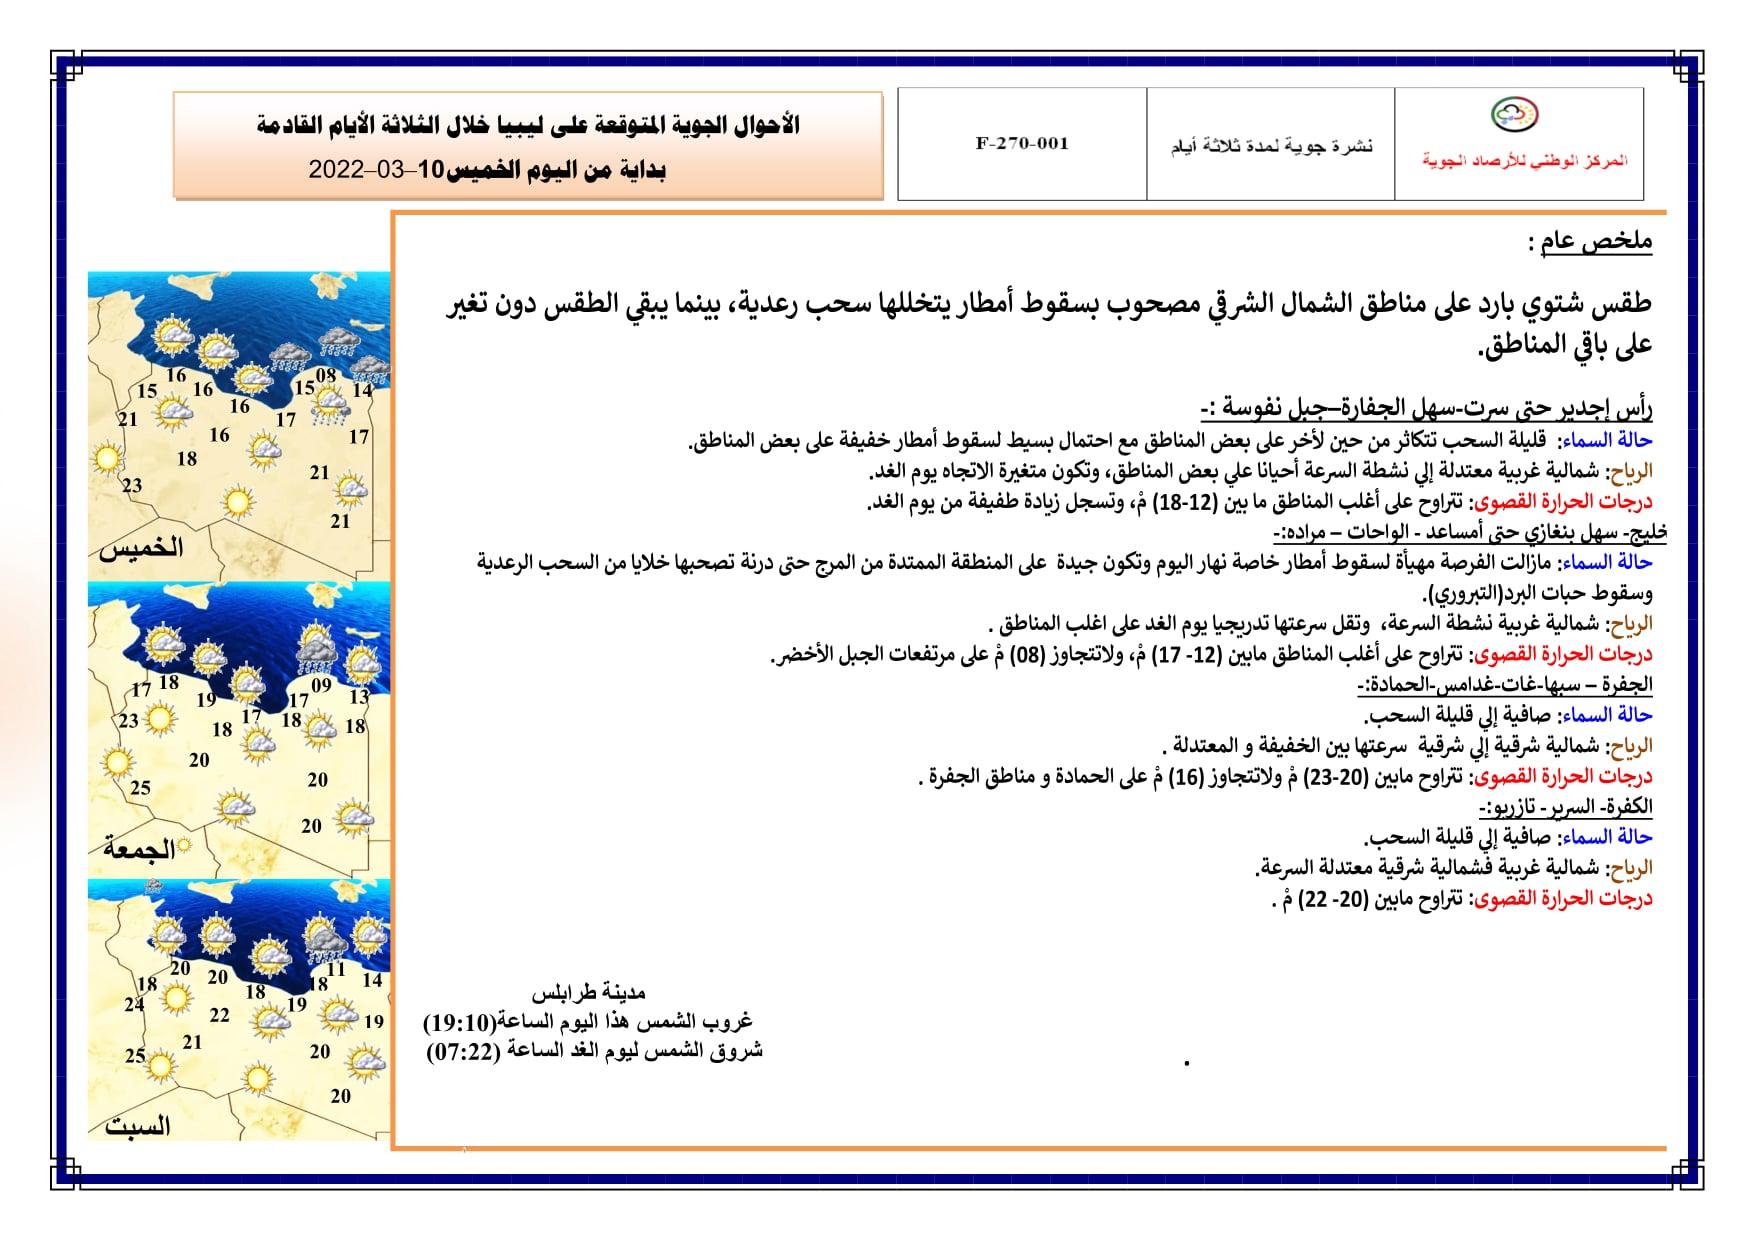 نشرة الأحوال الجوية والصيـــــد البحري المتوقعة على ليبيا